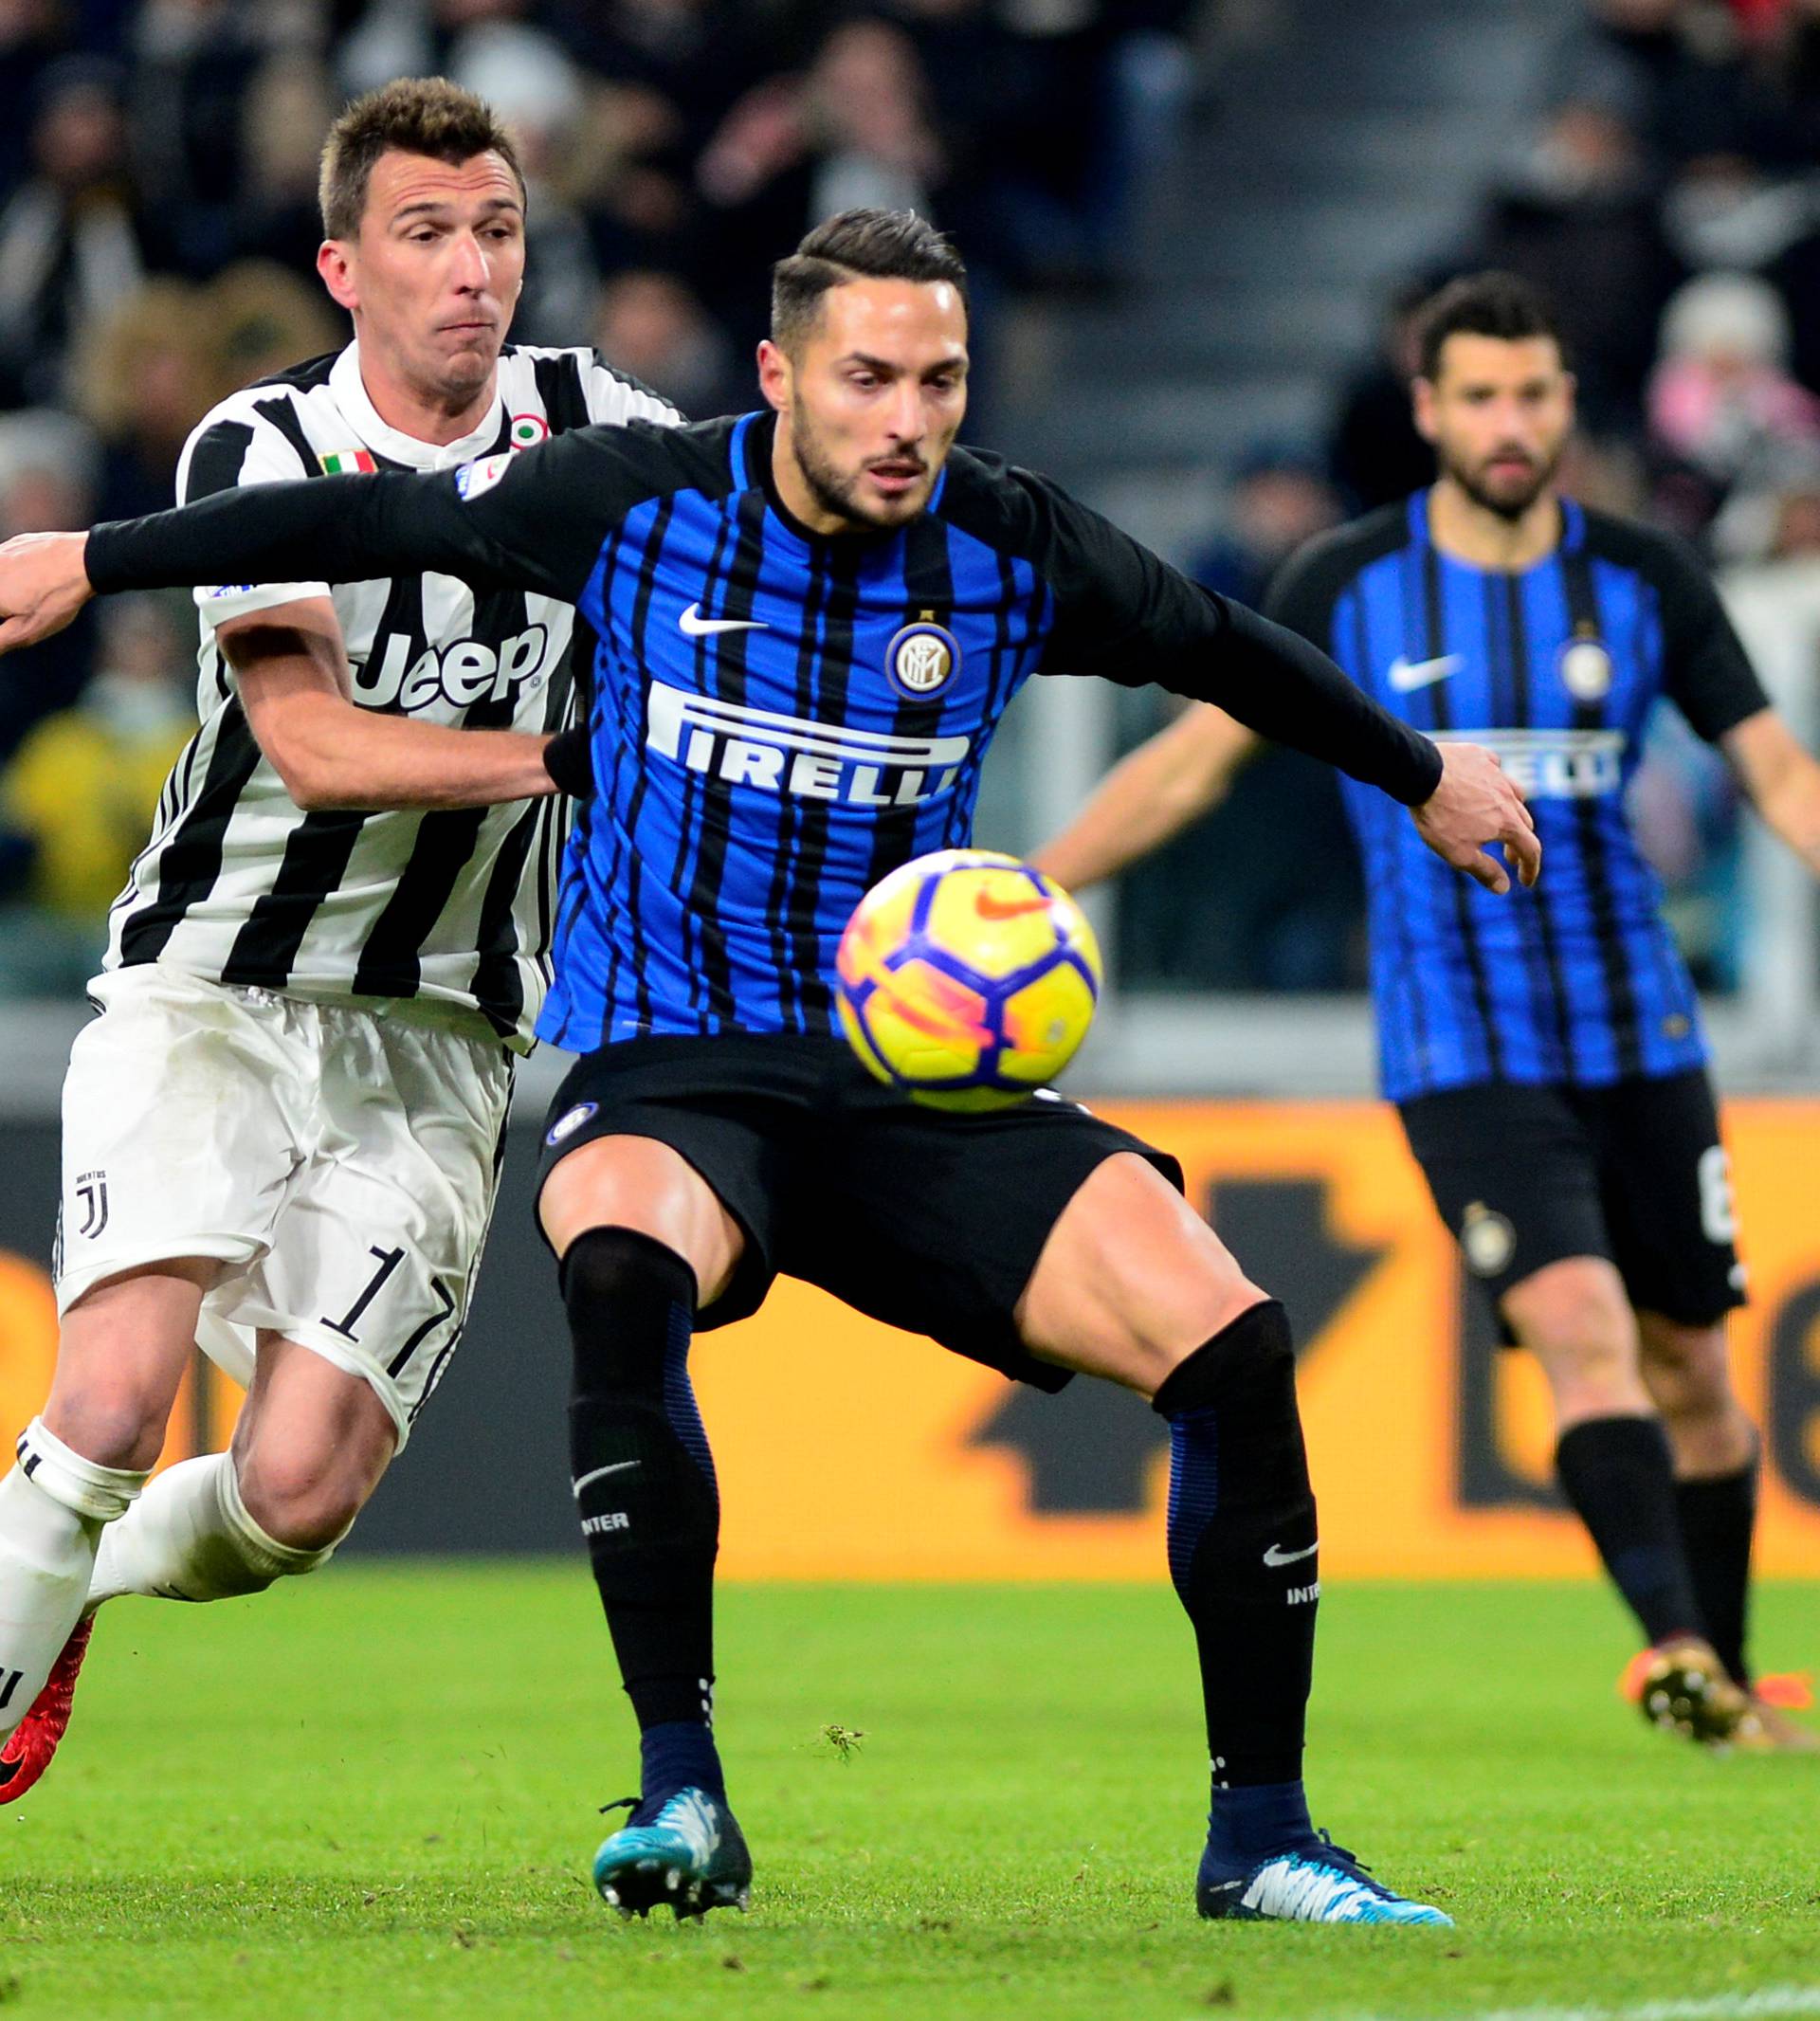 Serie A - Juventus vs Inter Milan